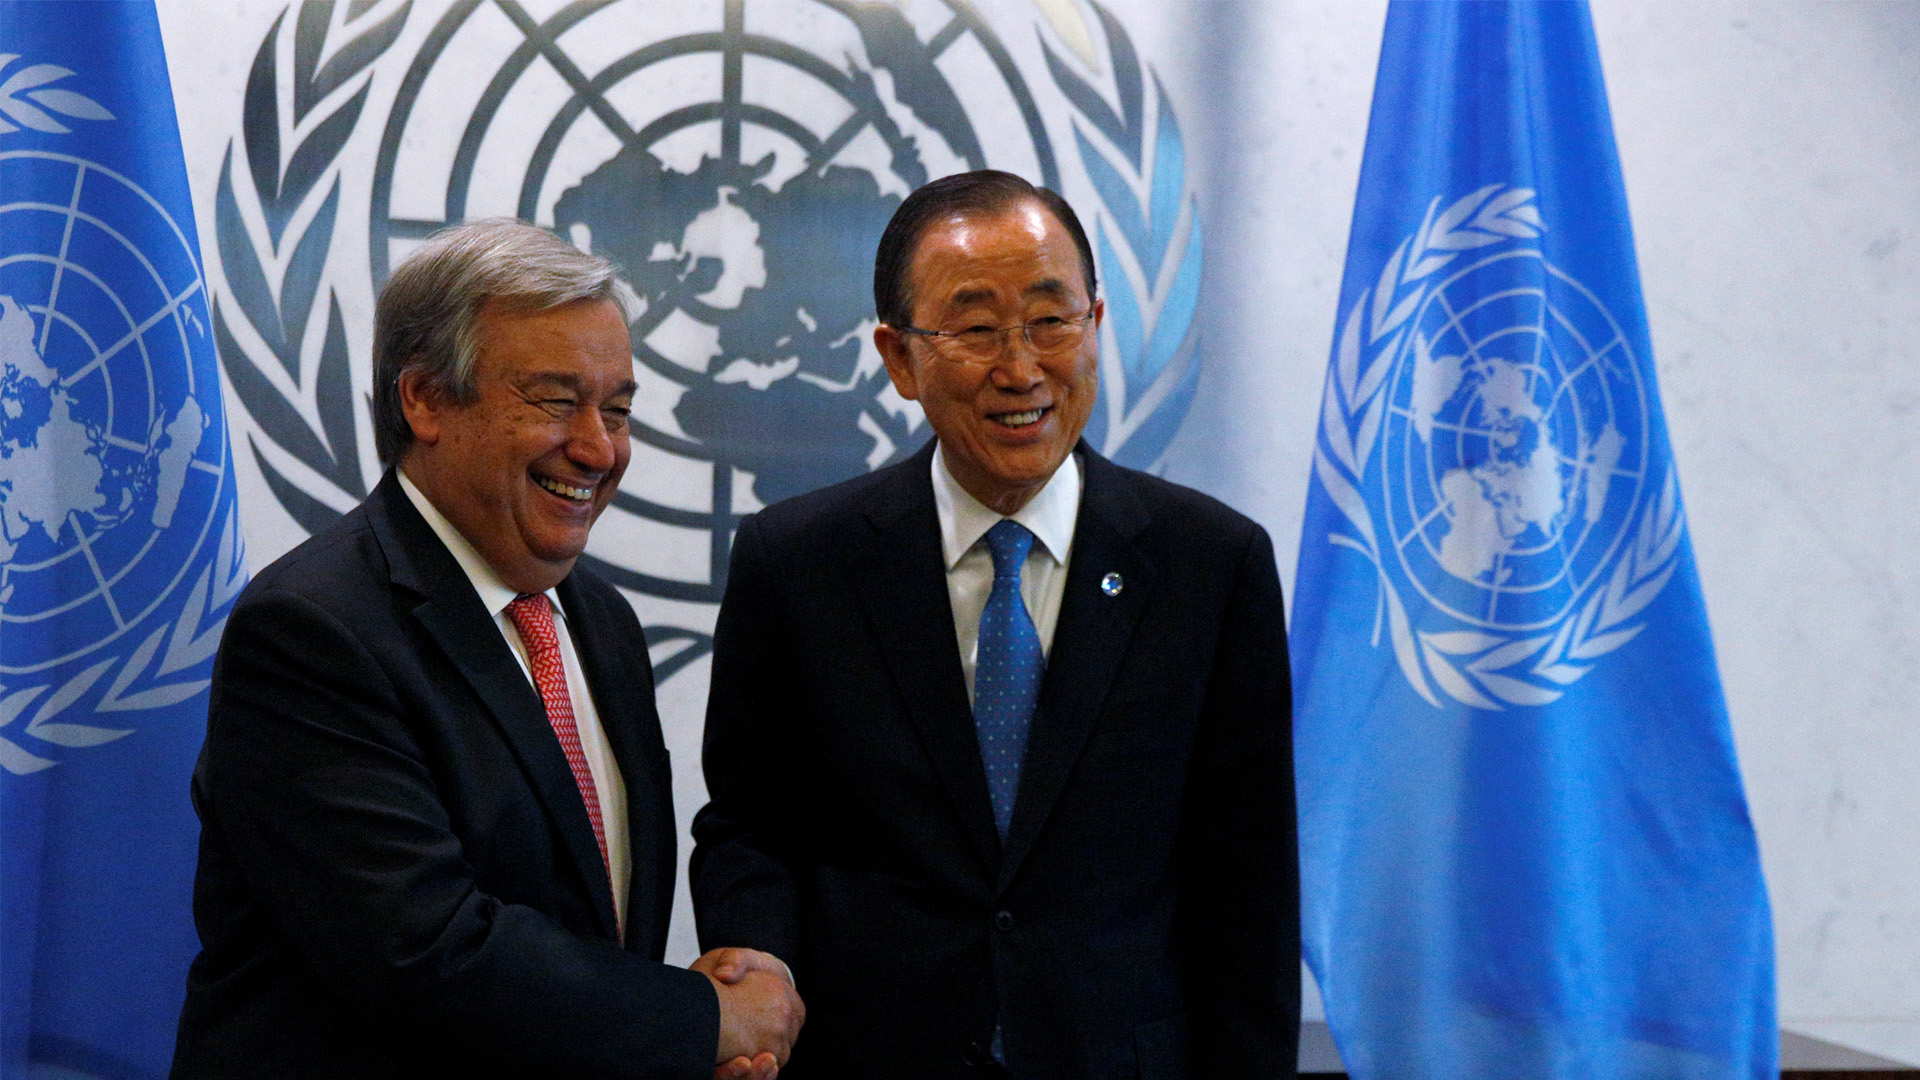 António Guterres fue confirmado como el sucesor de Ban Ki Moon y asumirá su cargo en enero